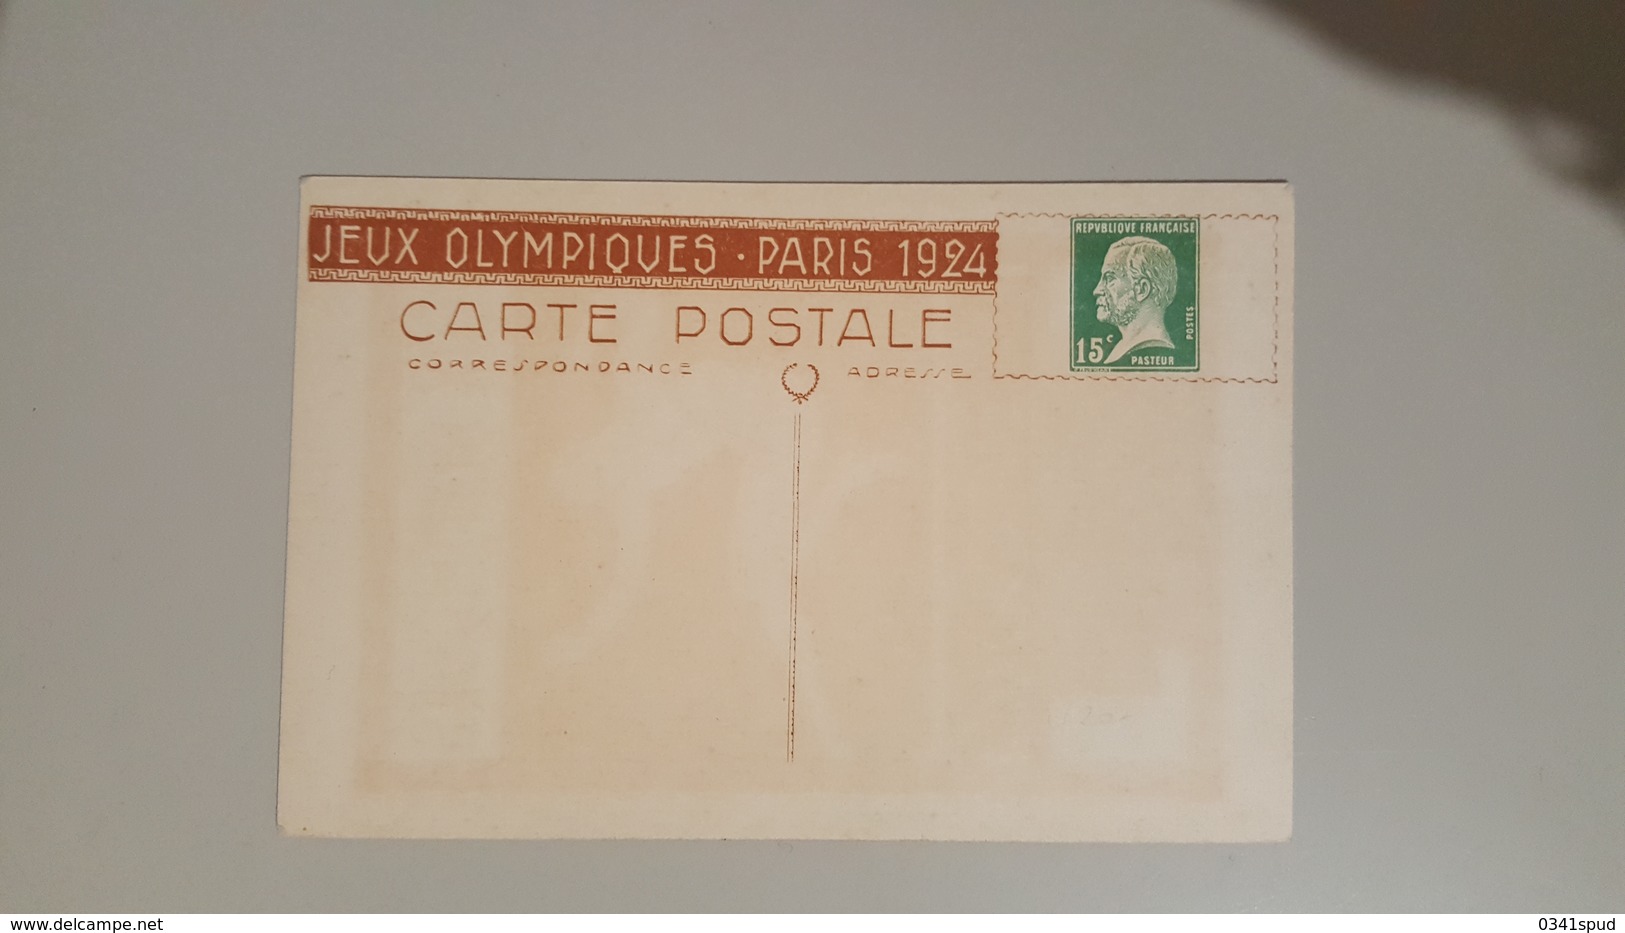 Jeux Olympiques 1924 Carte Postale Pasteur Saut  Salto TB Very Fine - Ete 1924: Paris